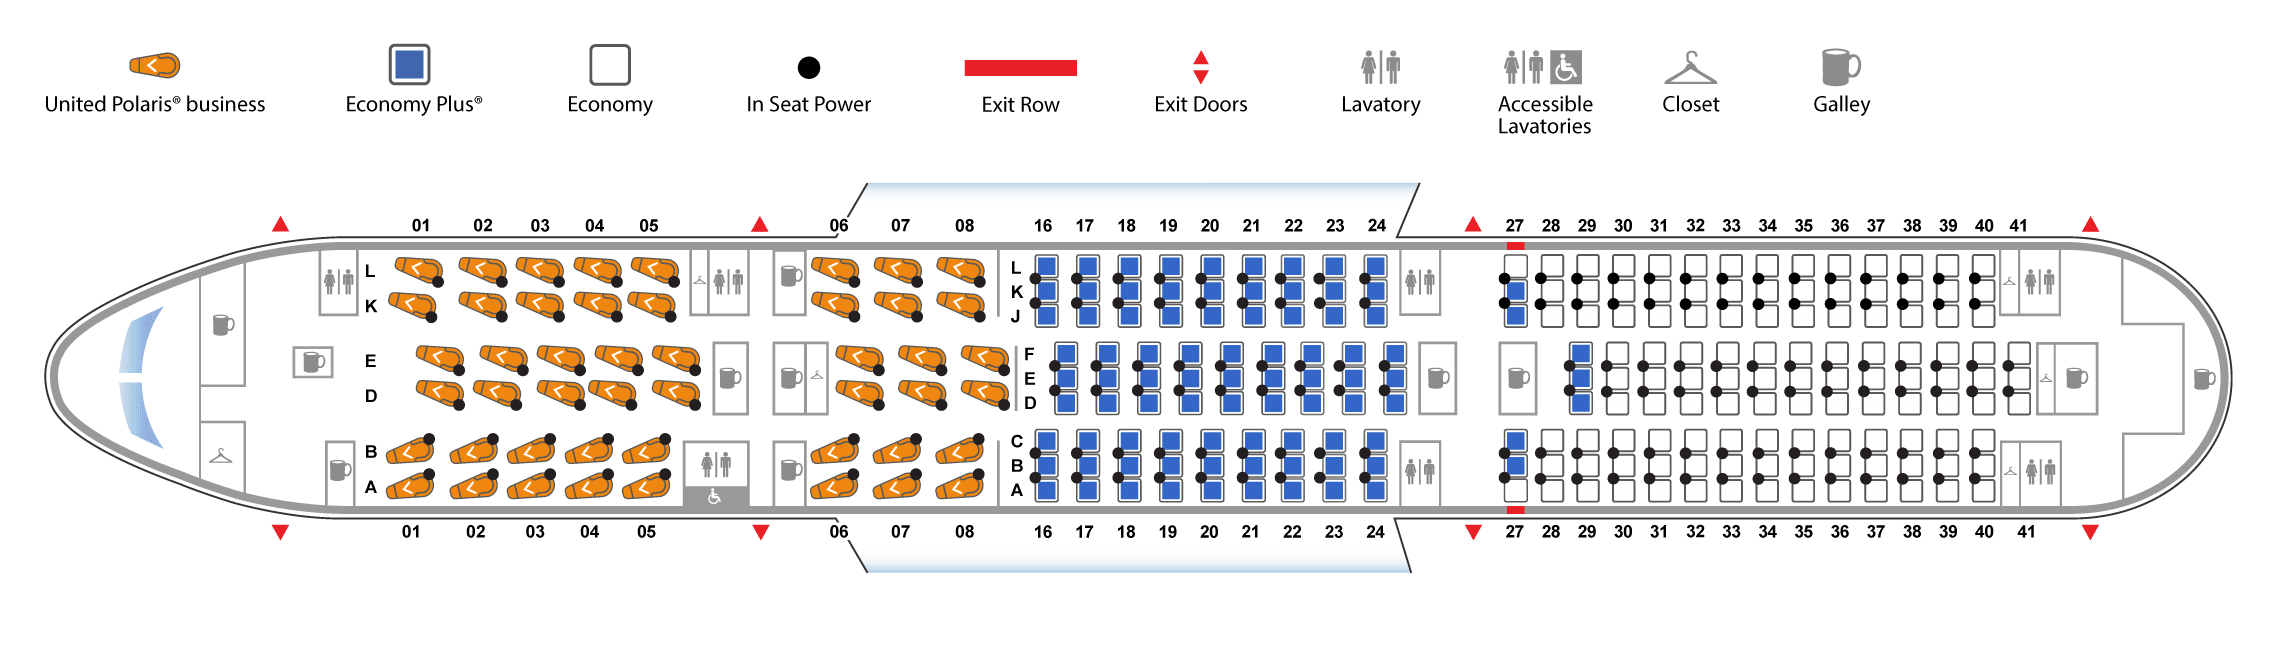 Dreamliner схема салона